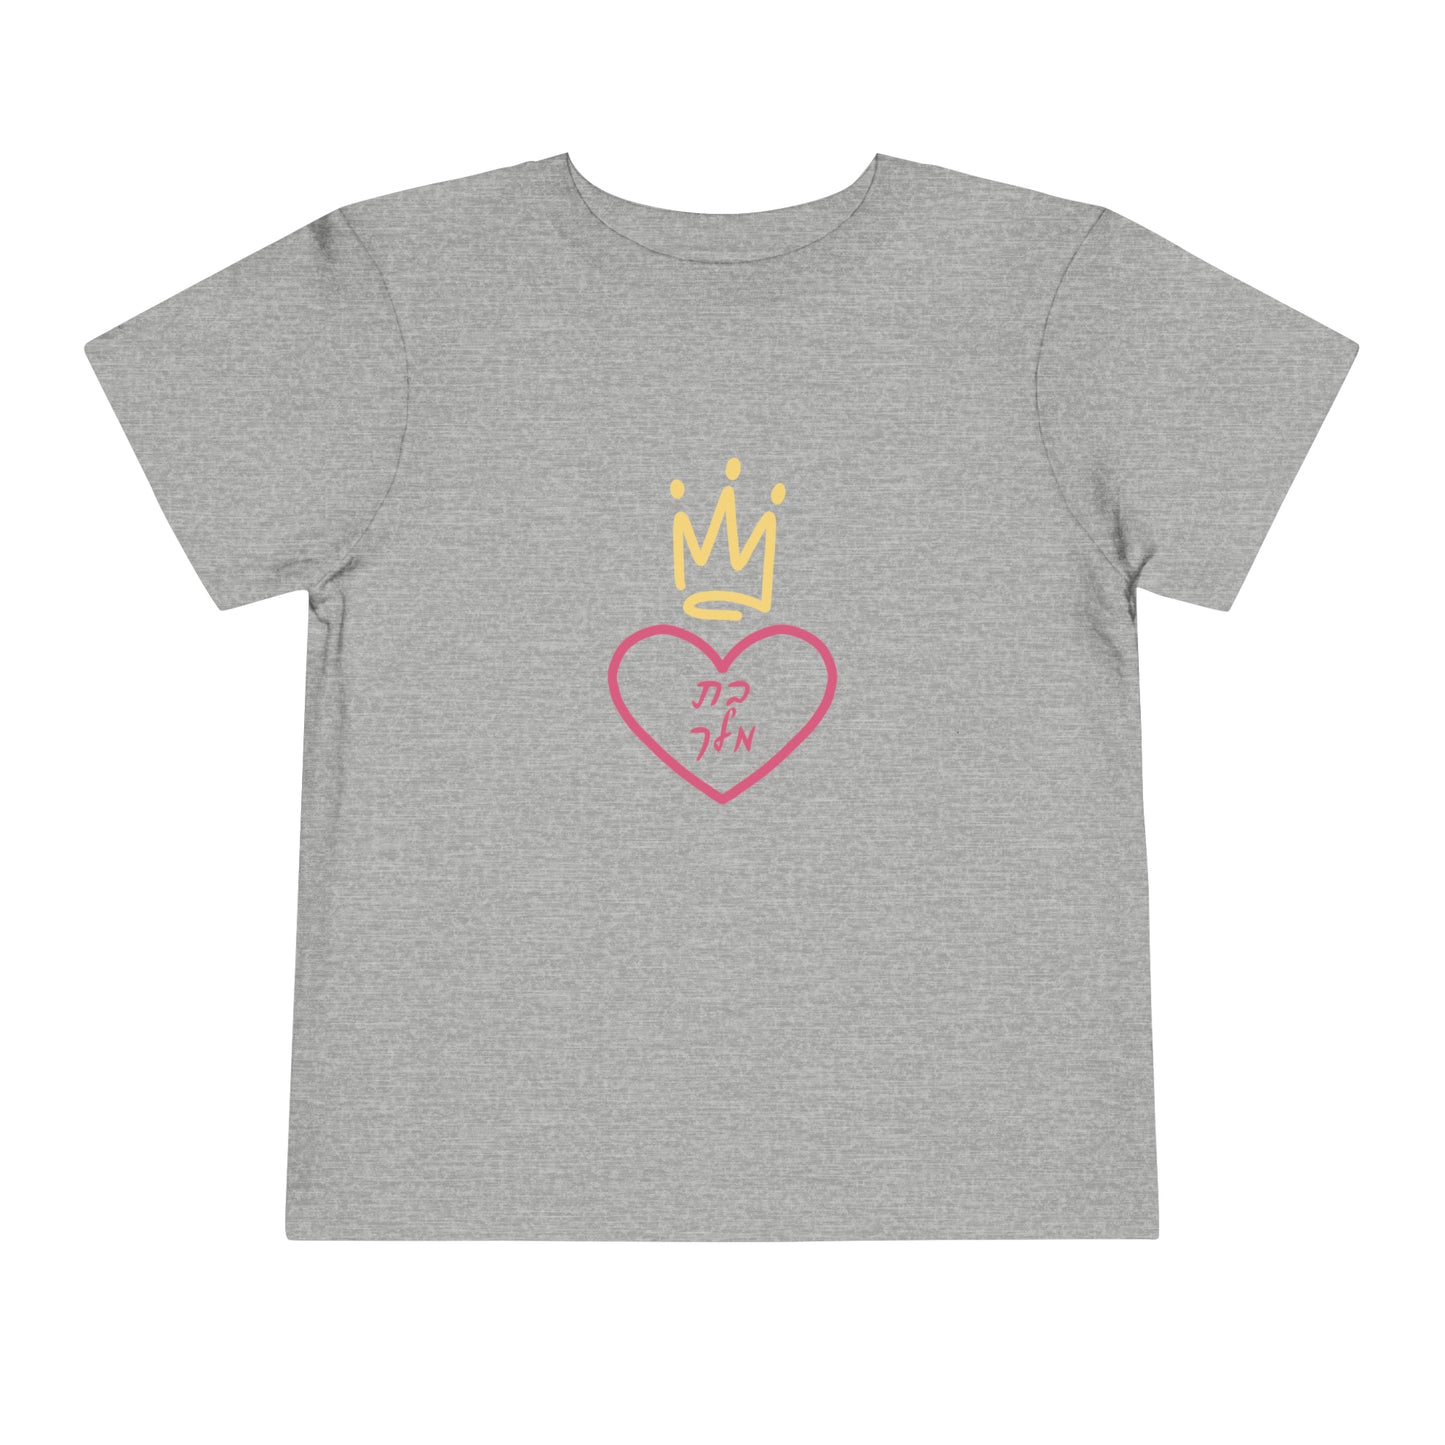 Toddler Girl's Bas Melech short sleeve t-shirt